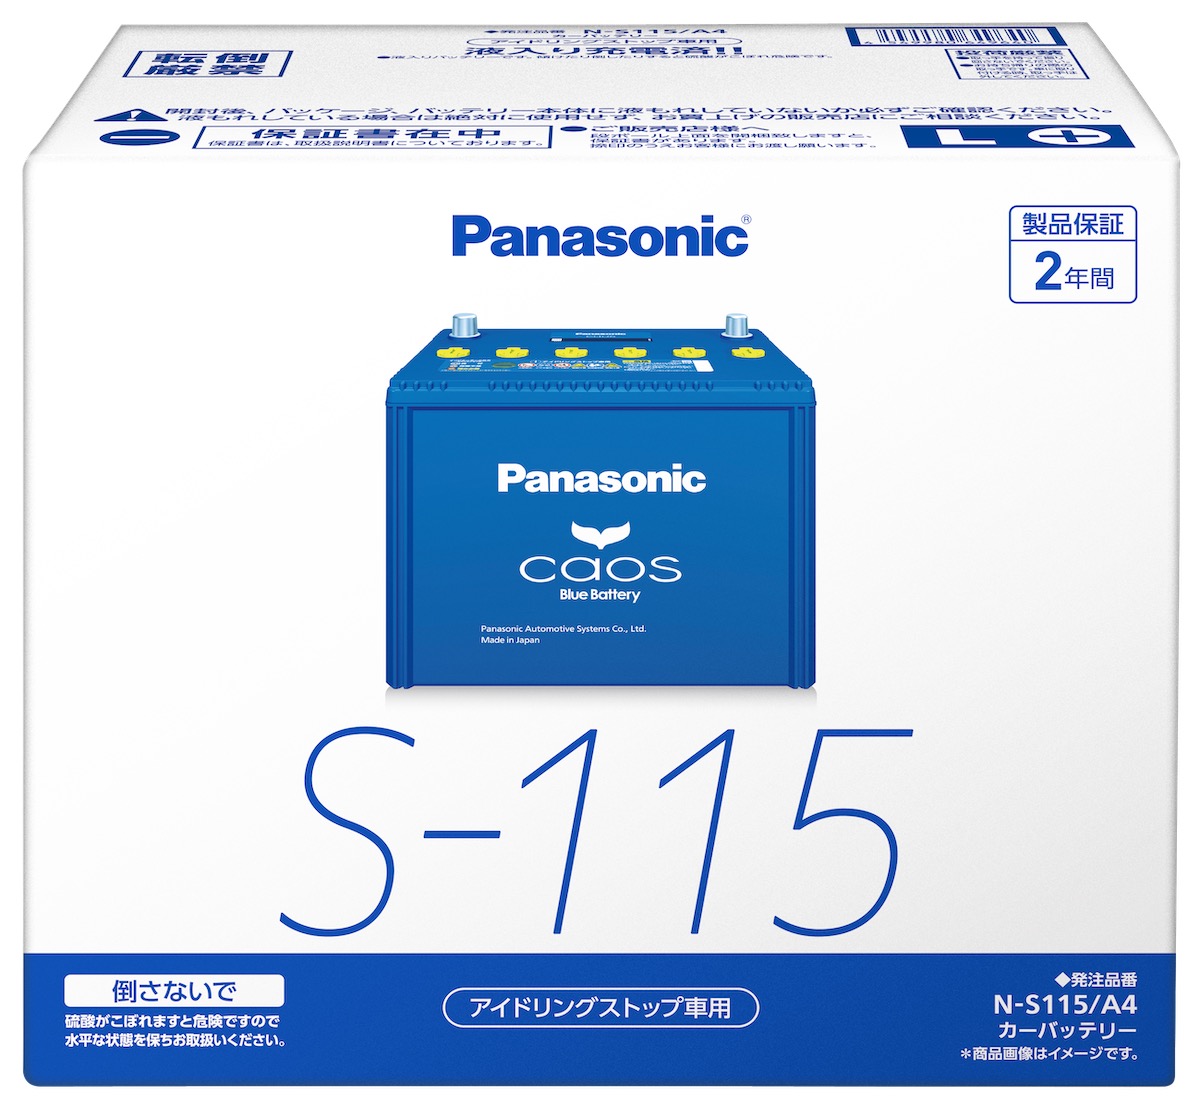 安い新品 パナソニック PANASONIC カオス バッテリー ニッサン ADバン N-100D23L/C7 送料無料 L